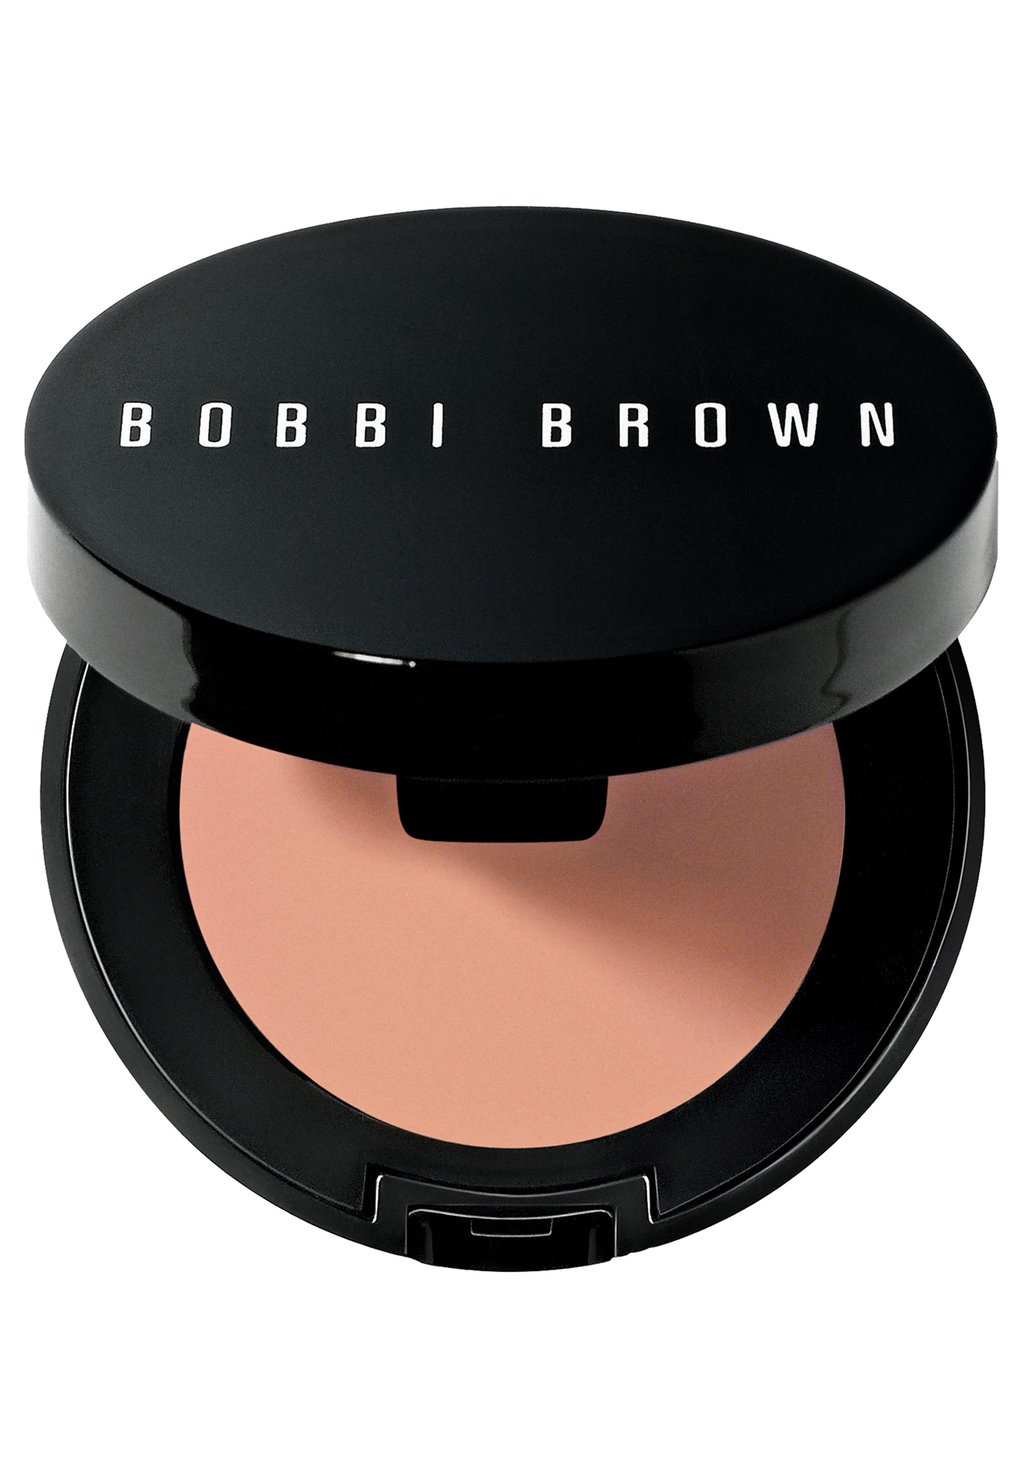 Корректор Corrector Bobbi Brown, цвет light to medium bisque bobbi brown устойчивый корректор в стике skin corrector stick bisque